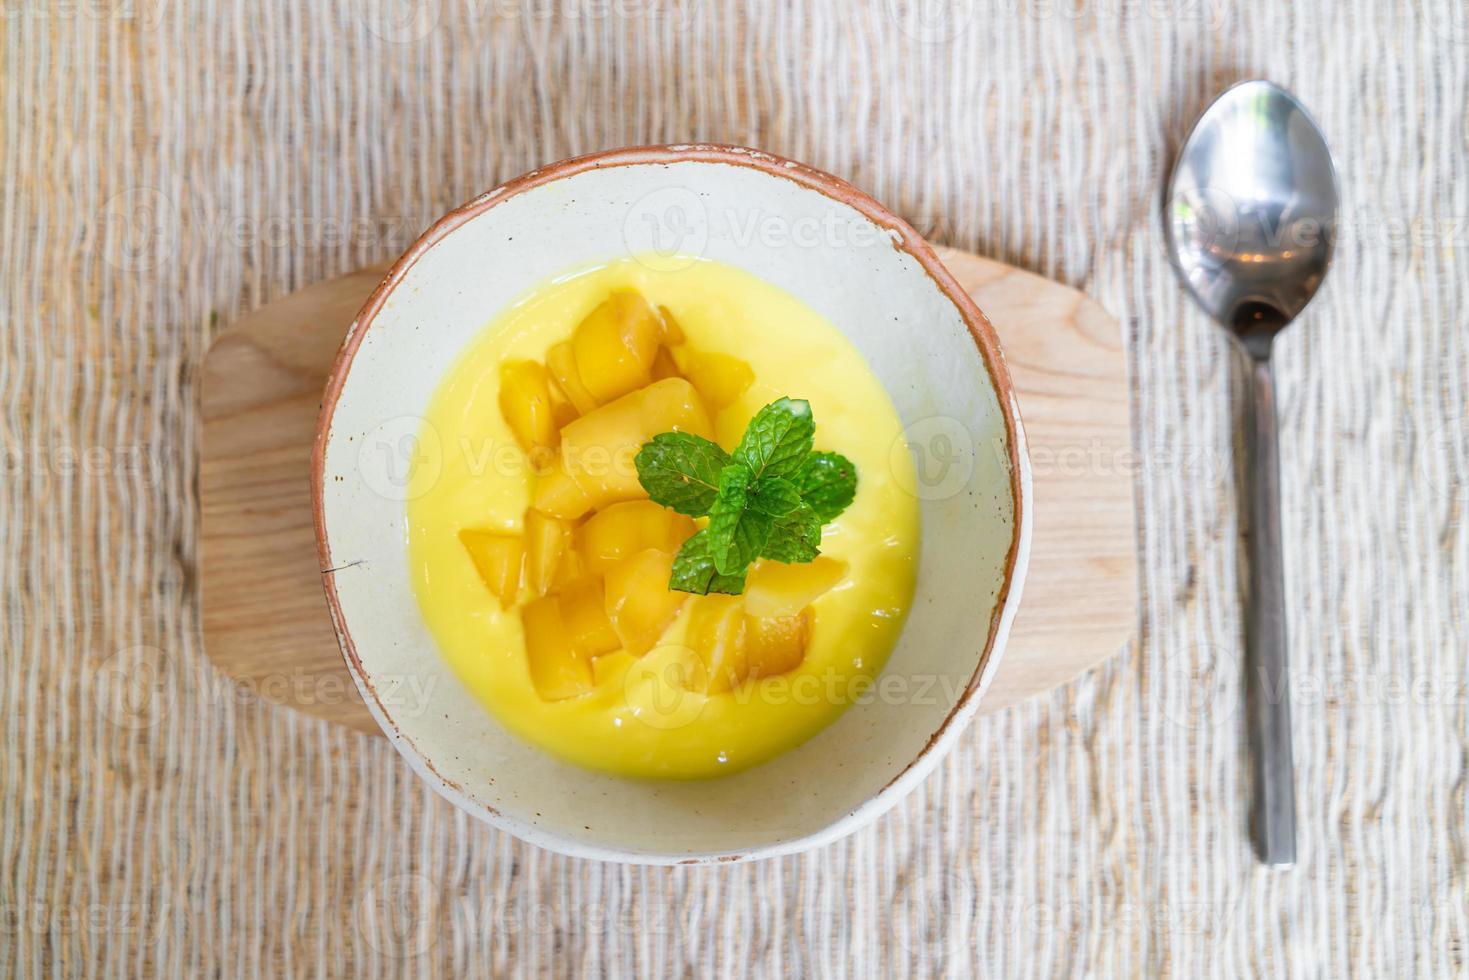 verse mango met yoghurt bowl foto